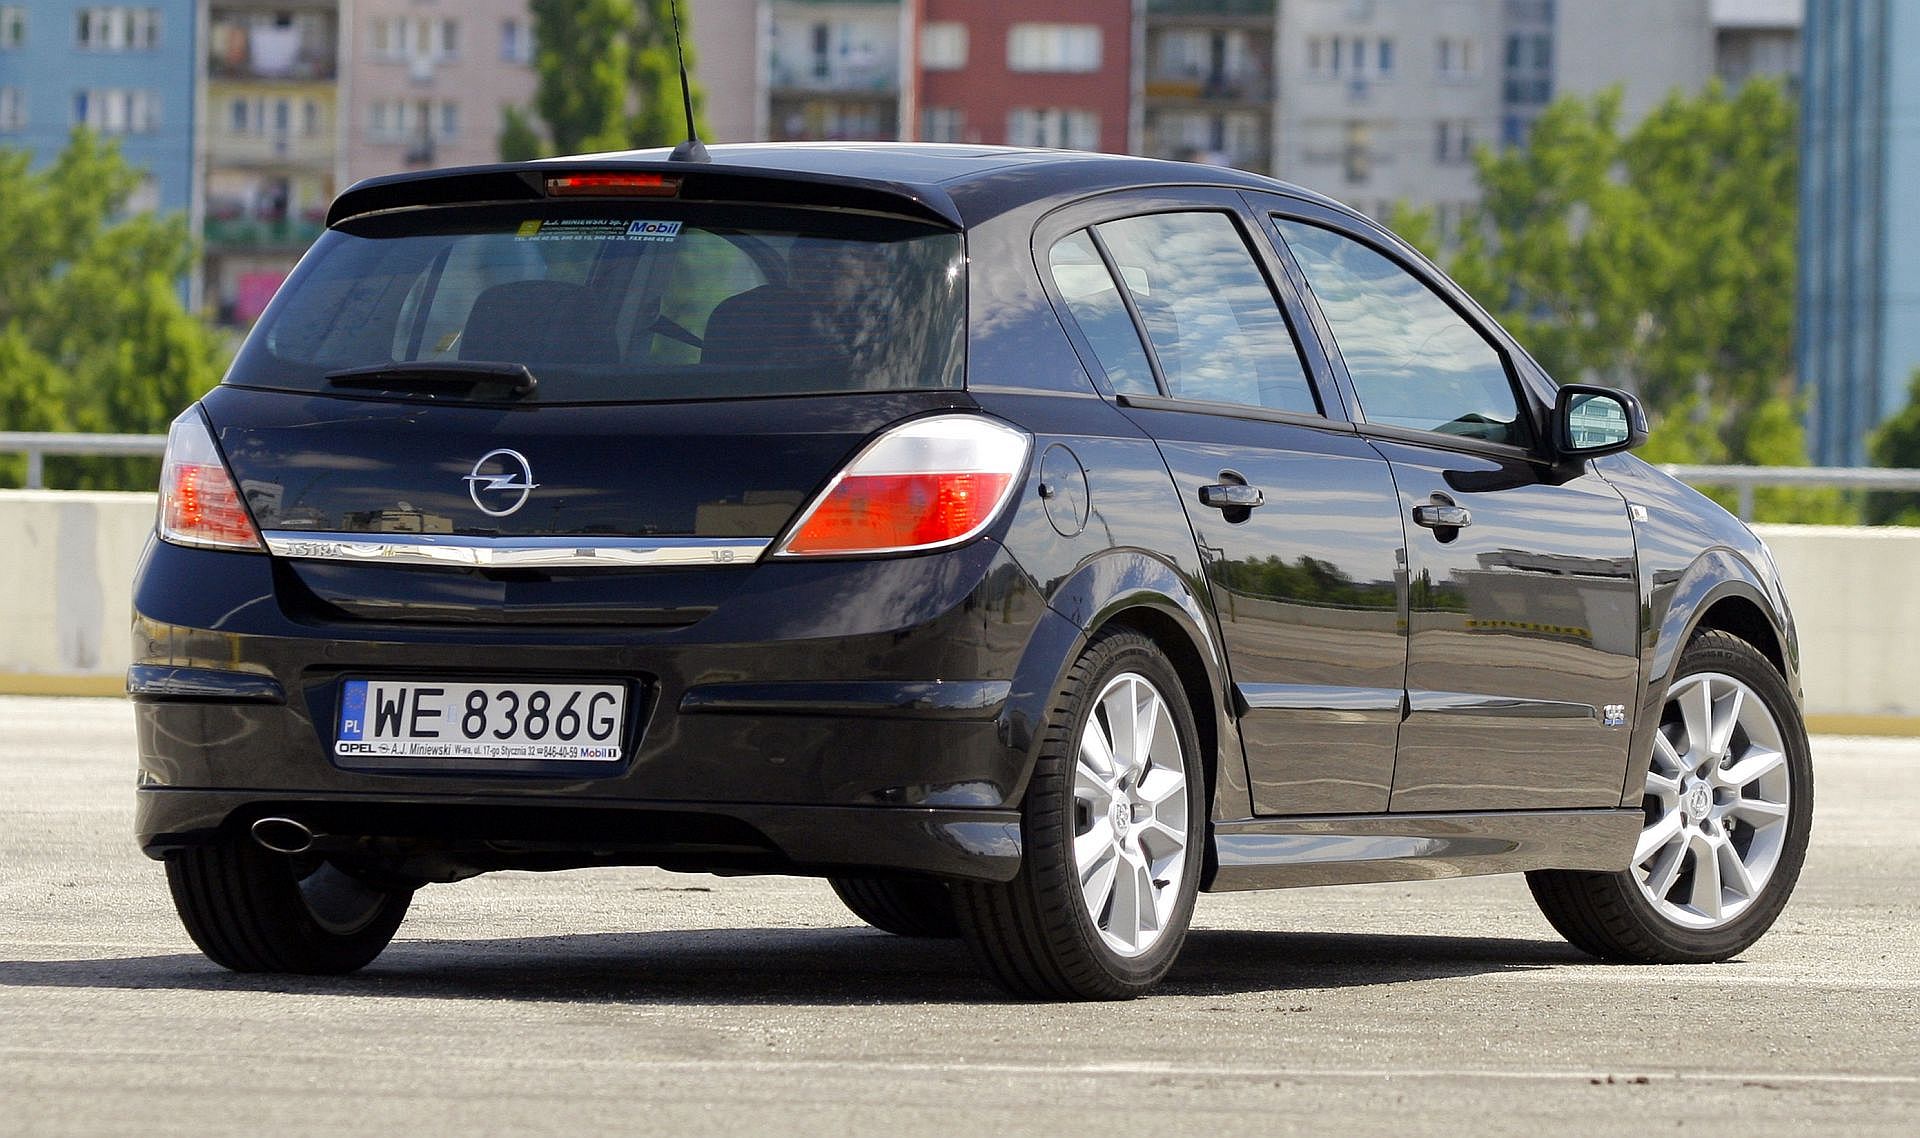 Uzywany Opel Astra Iii H I Opel Astra Iv J Ktora Generacje Wybrac